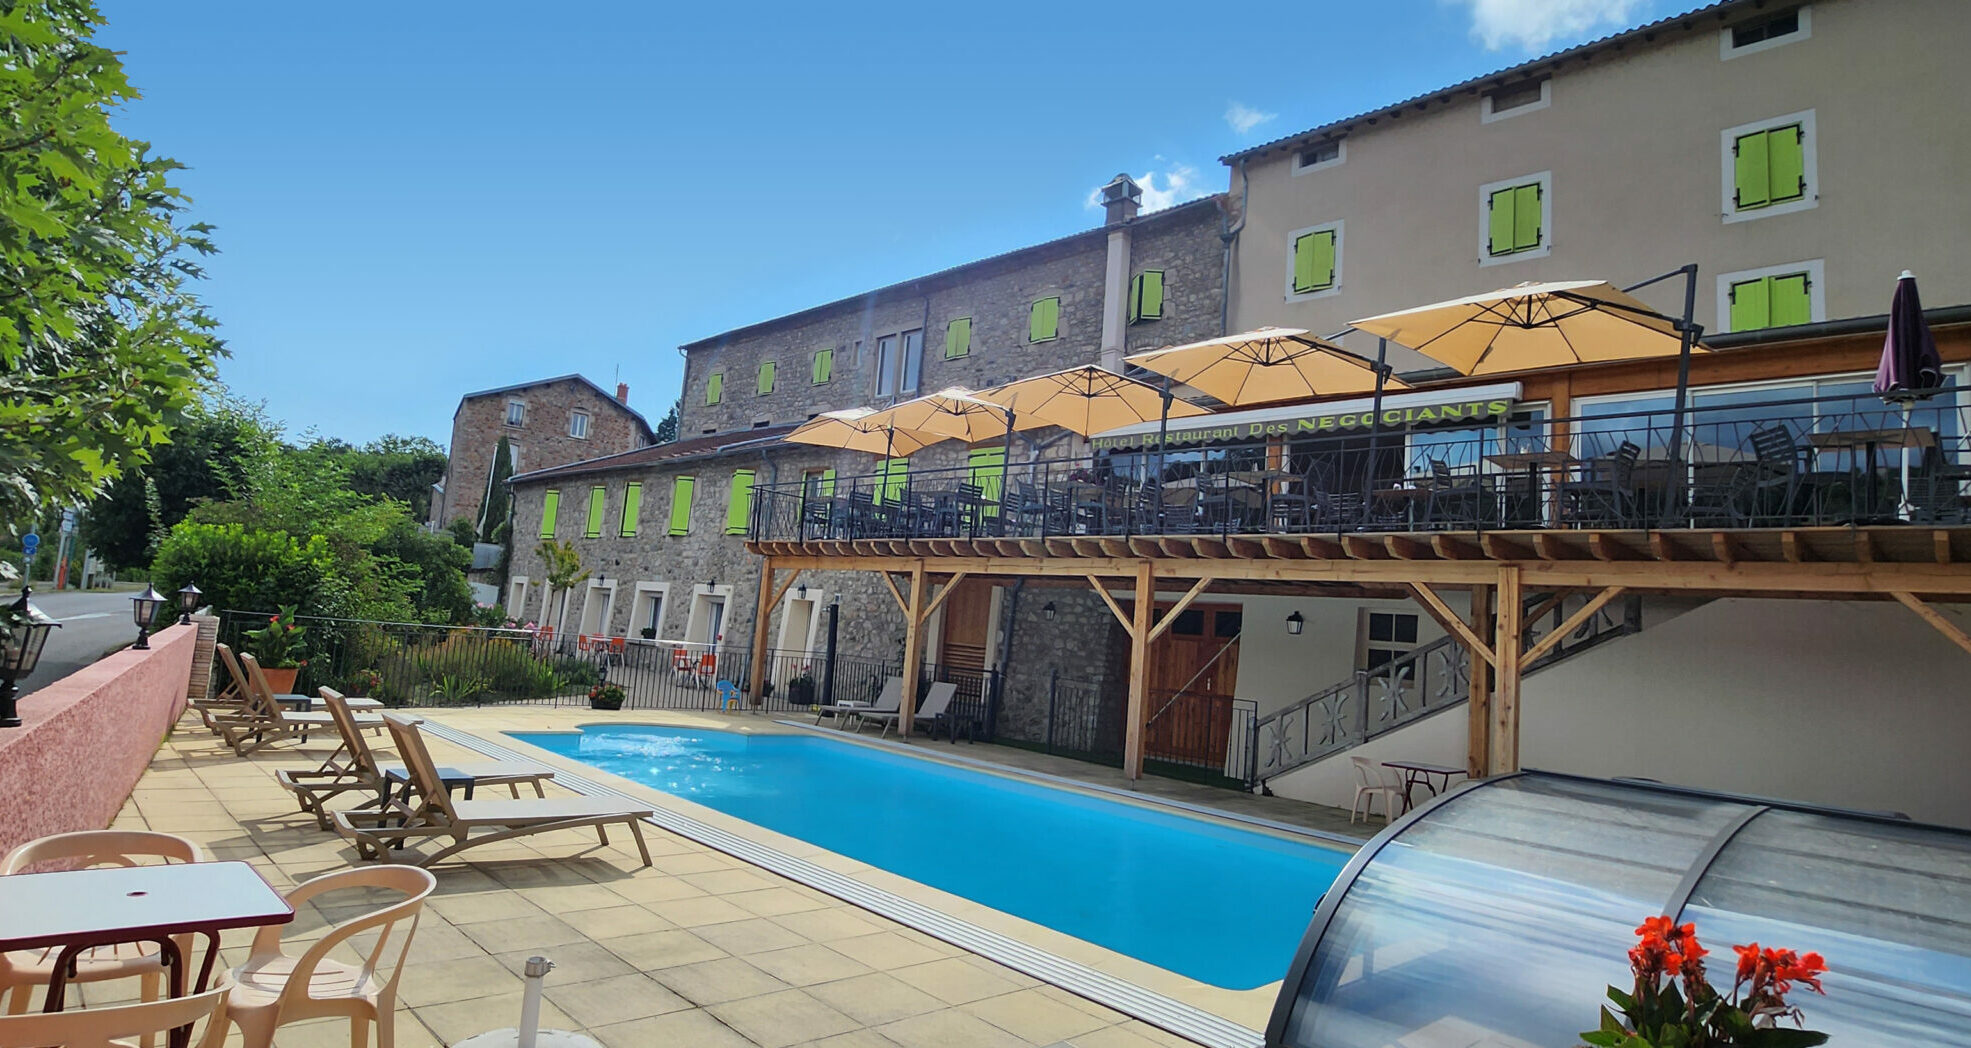 Façade de l’hôtel des négociant avec vue sur la piscine et la terrasse du restaurant sous un ciel bleu